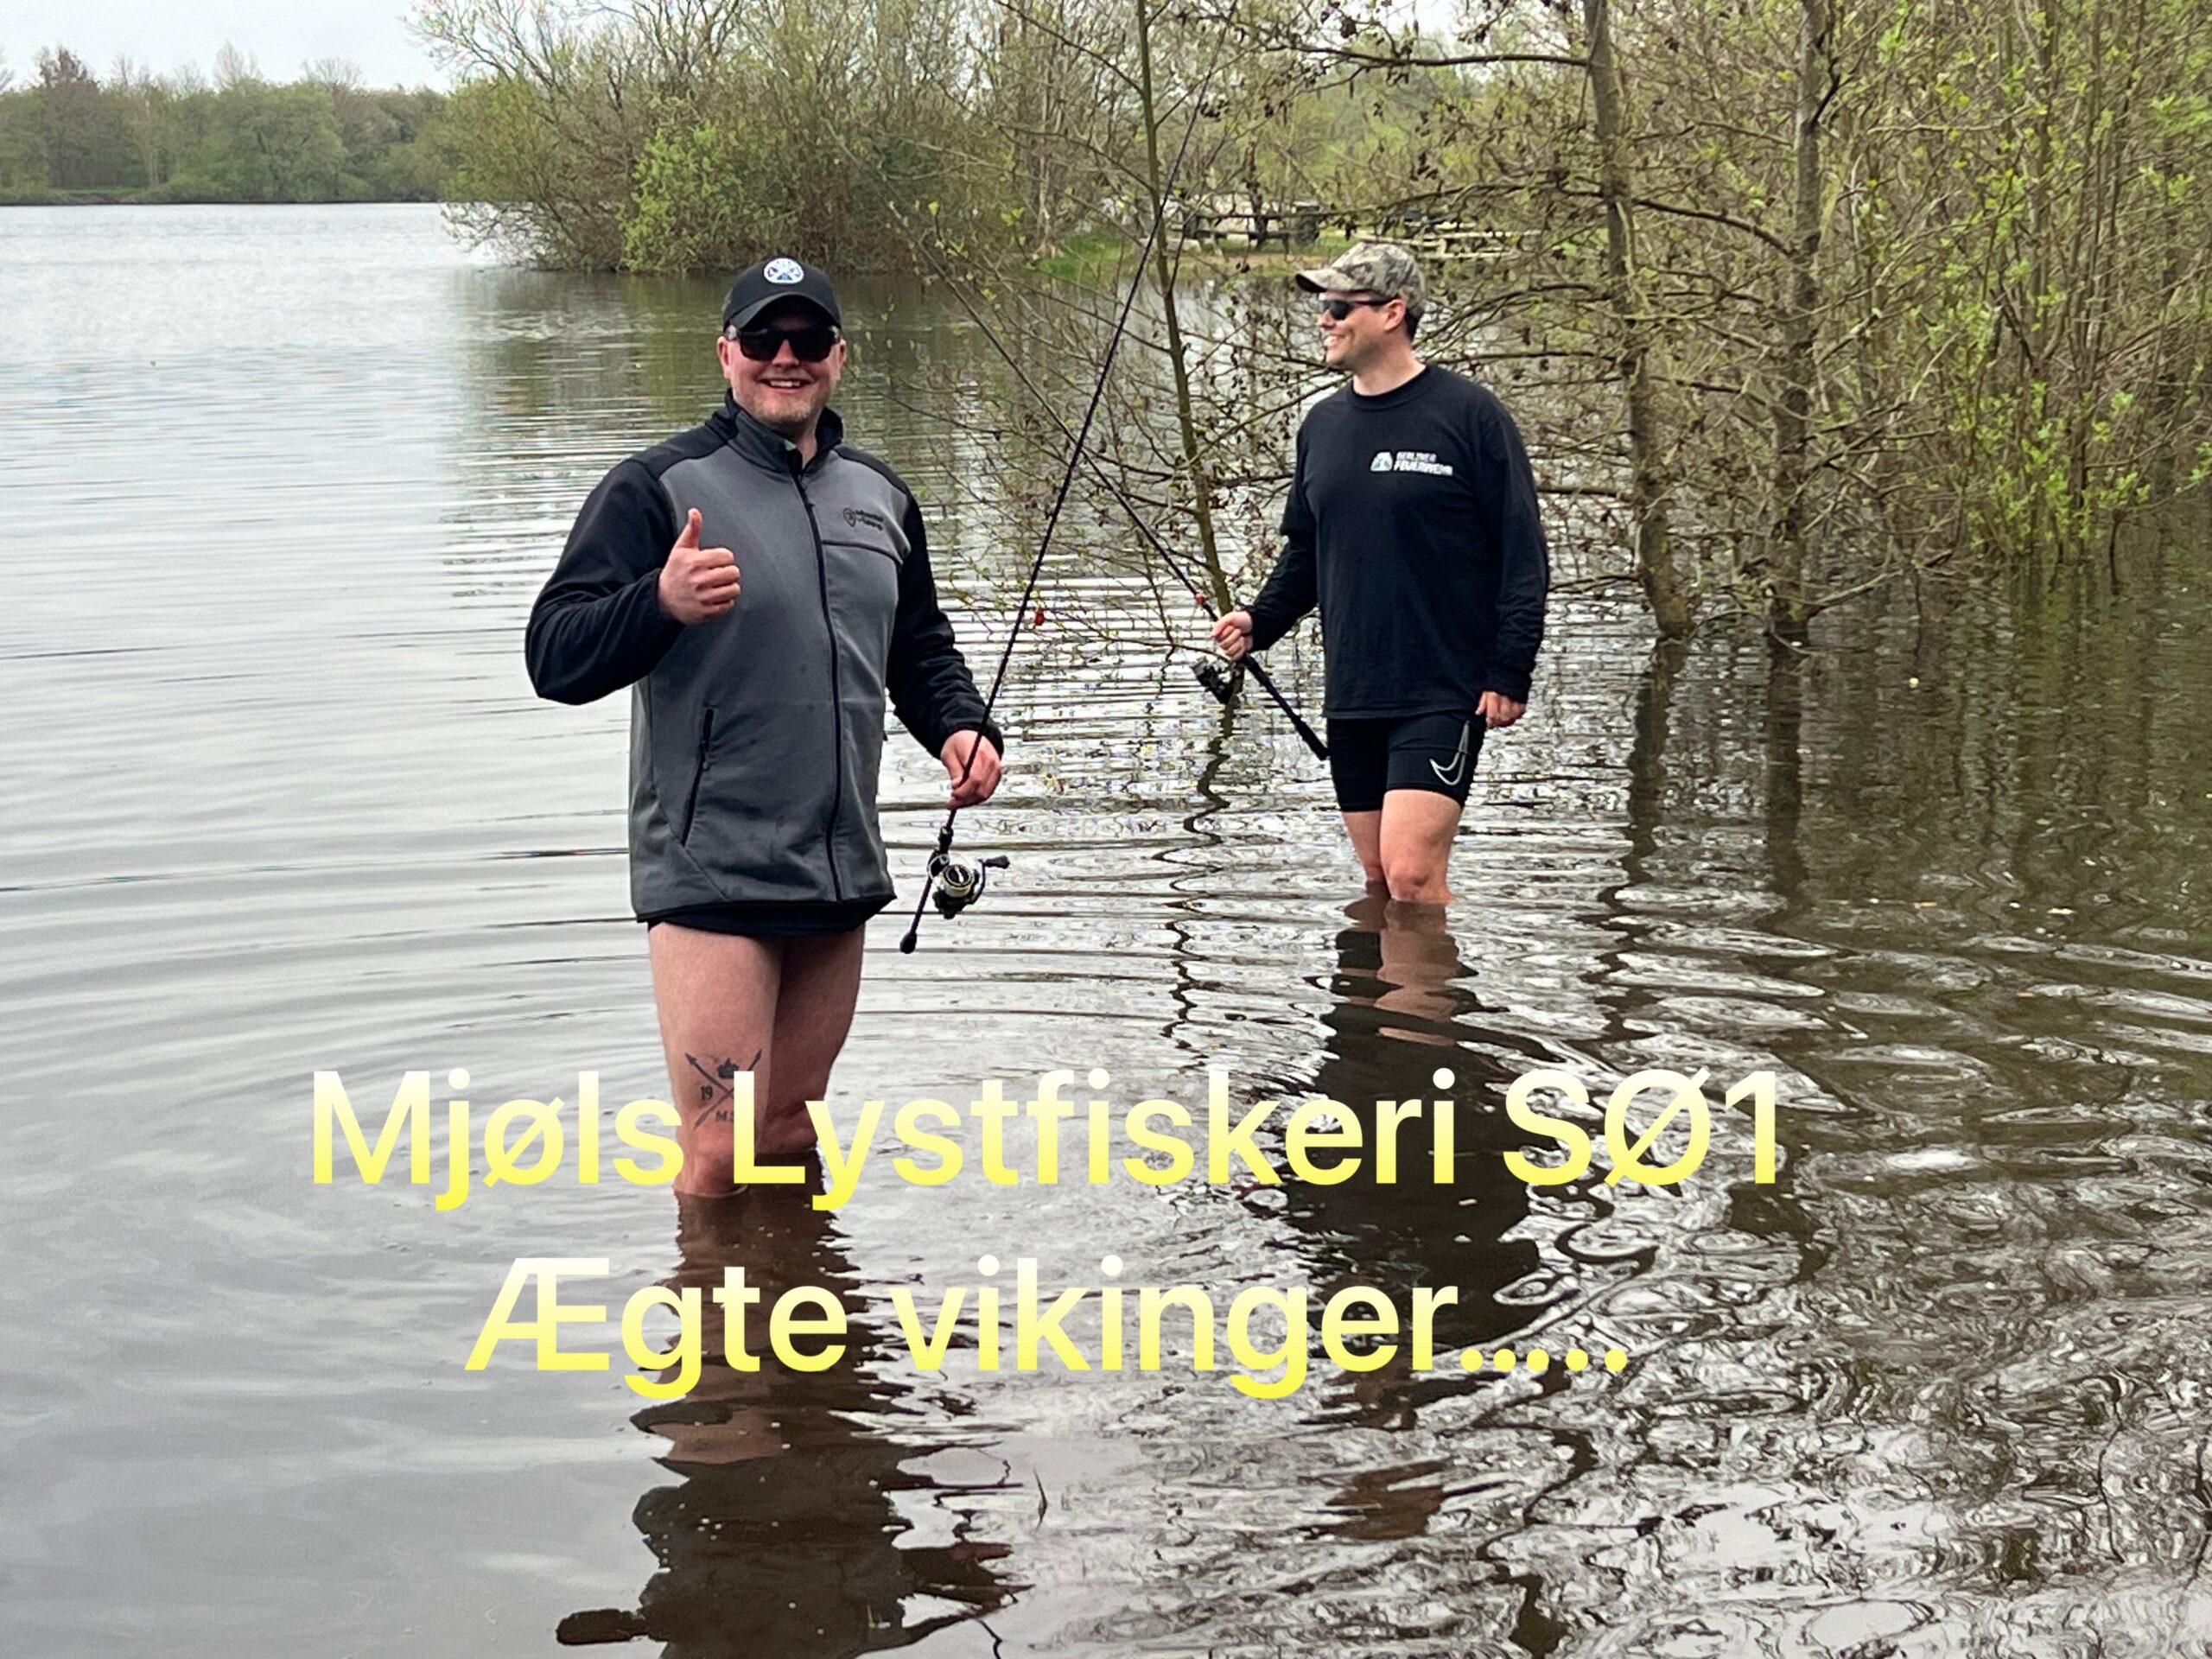 Ægte vikinger i Mjøls Lystfiskeri i dag